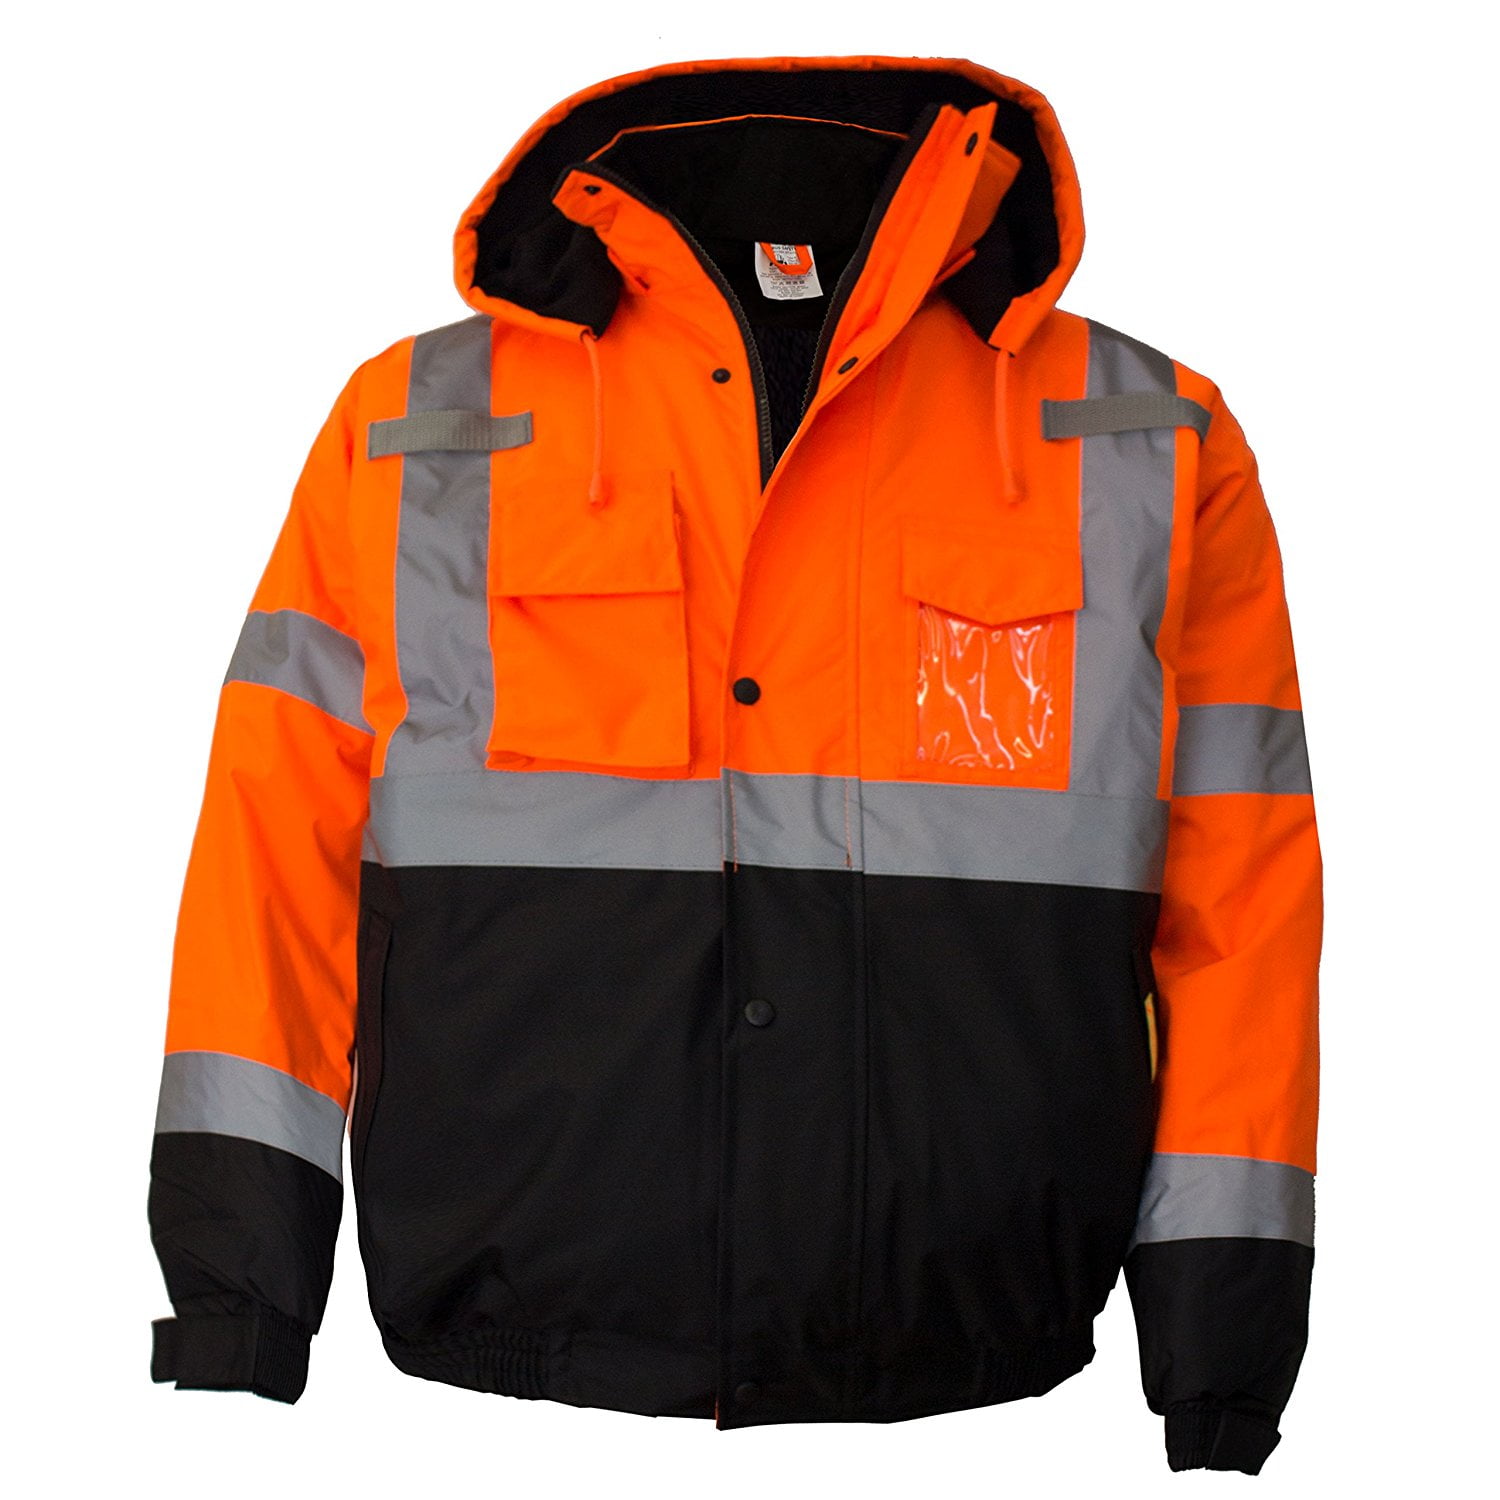 Hi Viz High Visibility Waterproof Bomber Safety Work Yellow Orange Jacket Coat 